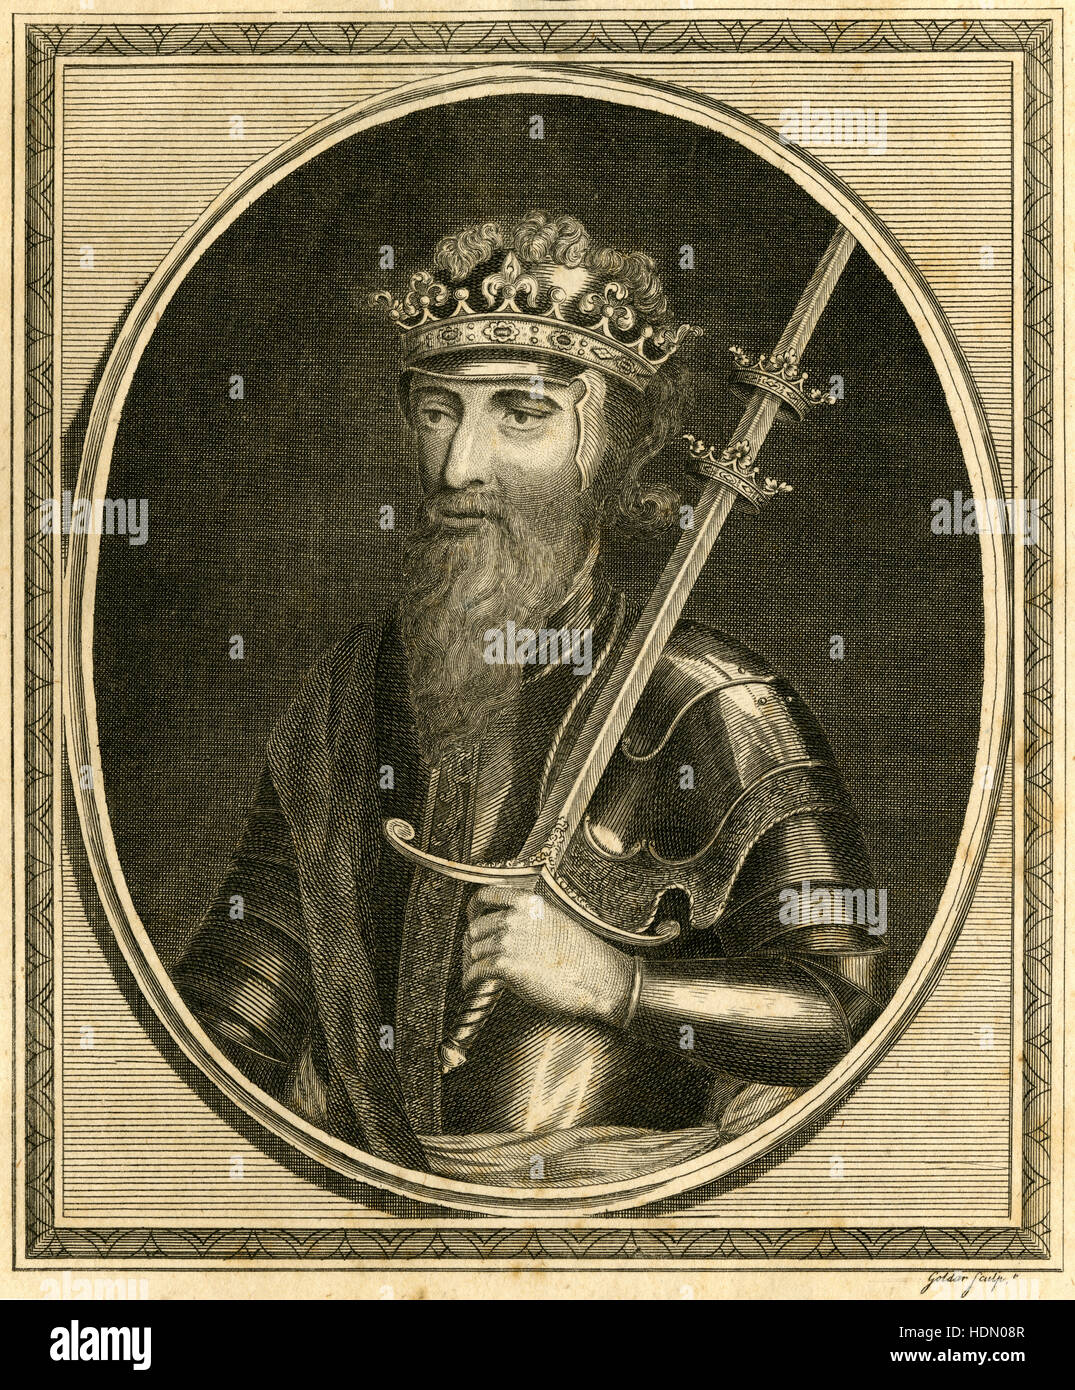 Antike 1785 Gravur, König Edward III. Eduard III. (1312-1377) war König von England aus 25 Januar 1327 bis zu seinem Tod; Er ist bekannt für seine militärischen Erfolge und für die Wiederherstellung der königlichen Autorität nach der katastrophalen und unorthodoxe Herrschaft seines Vaters Edward II. QUELLE: ORIGINAL GRAVUR. Stockfoto